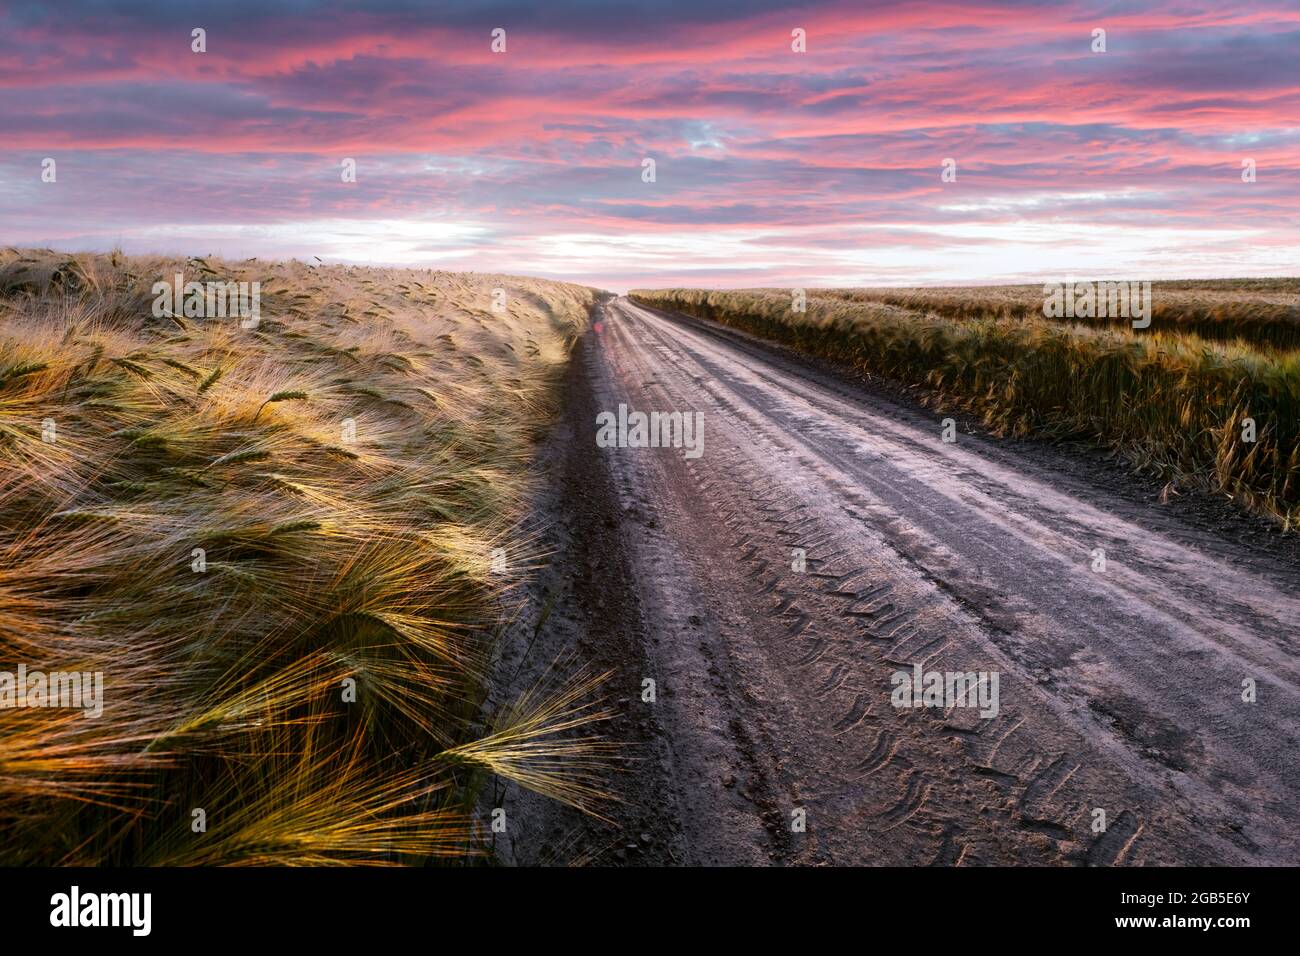 Route dans le champ avec blé mûr et ciel de coucher de soleil rose avec nuages. Photographie de paysage Banque D'Images